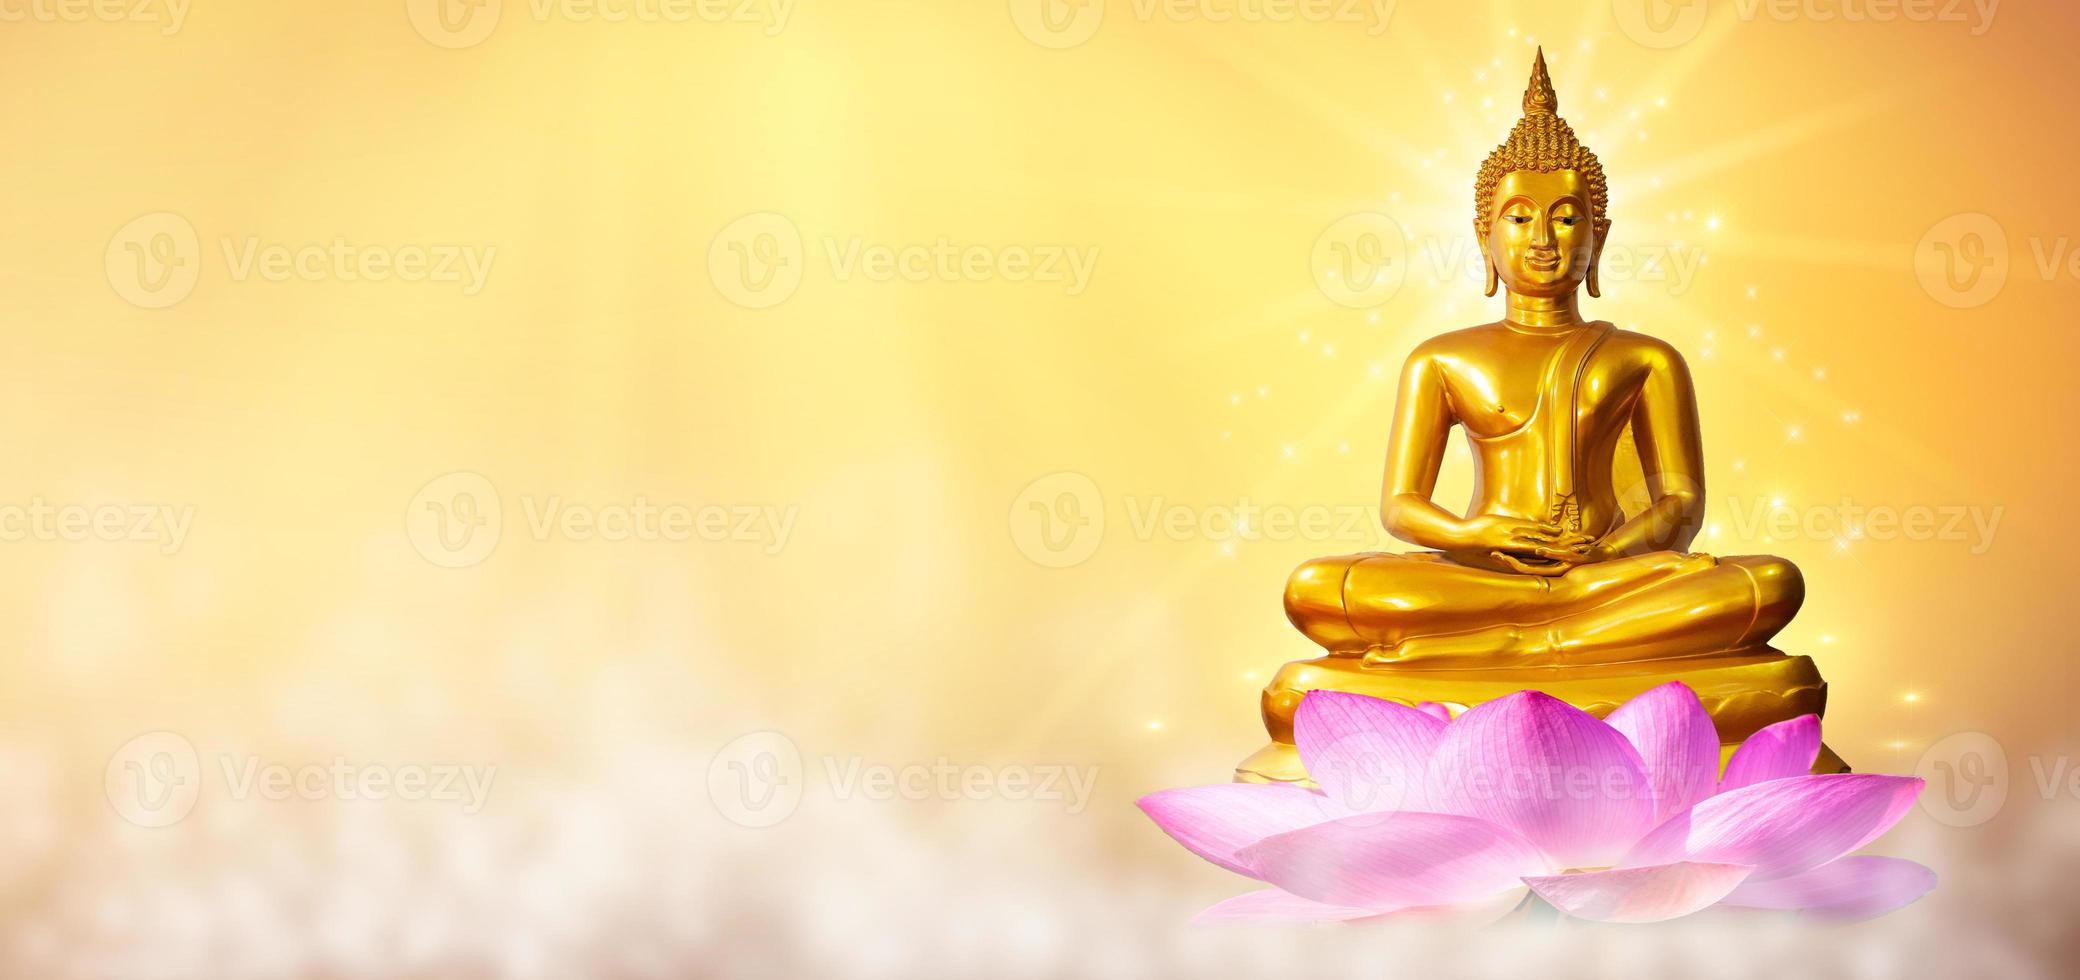 buddha staty vatten lotus buddha står på lotusblomma på orange bakgrund foto